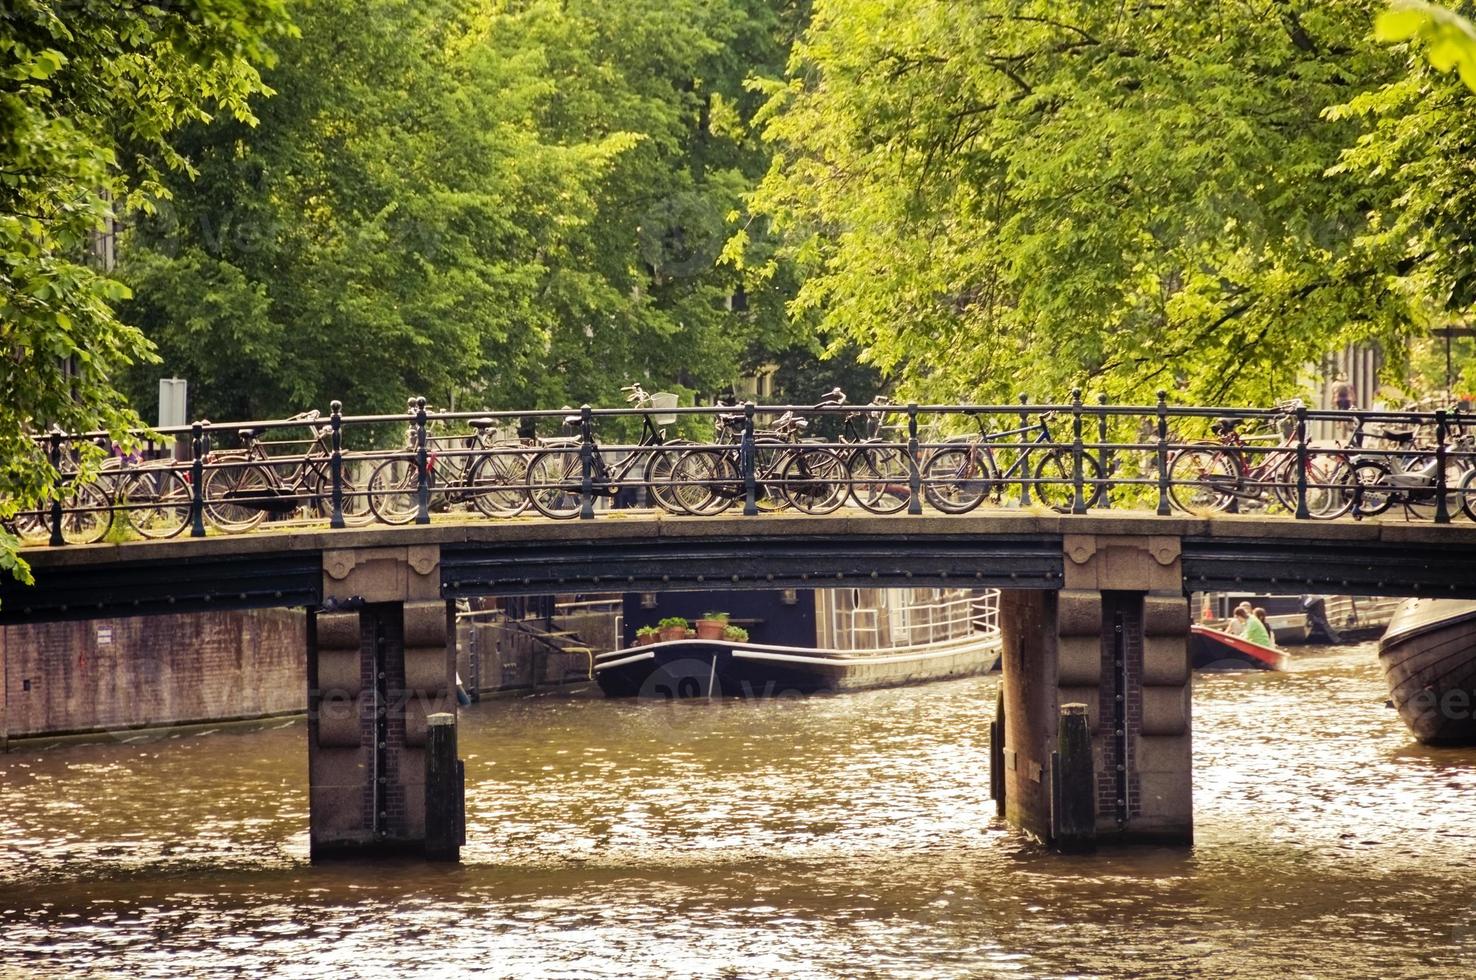 fietsen op een brug in amsterdam foto